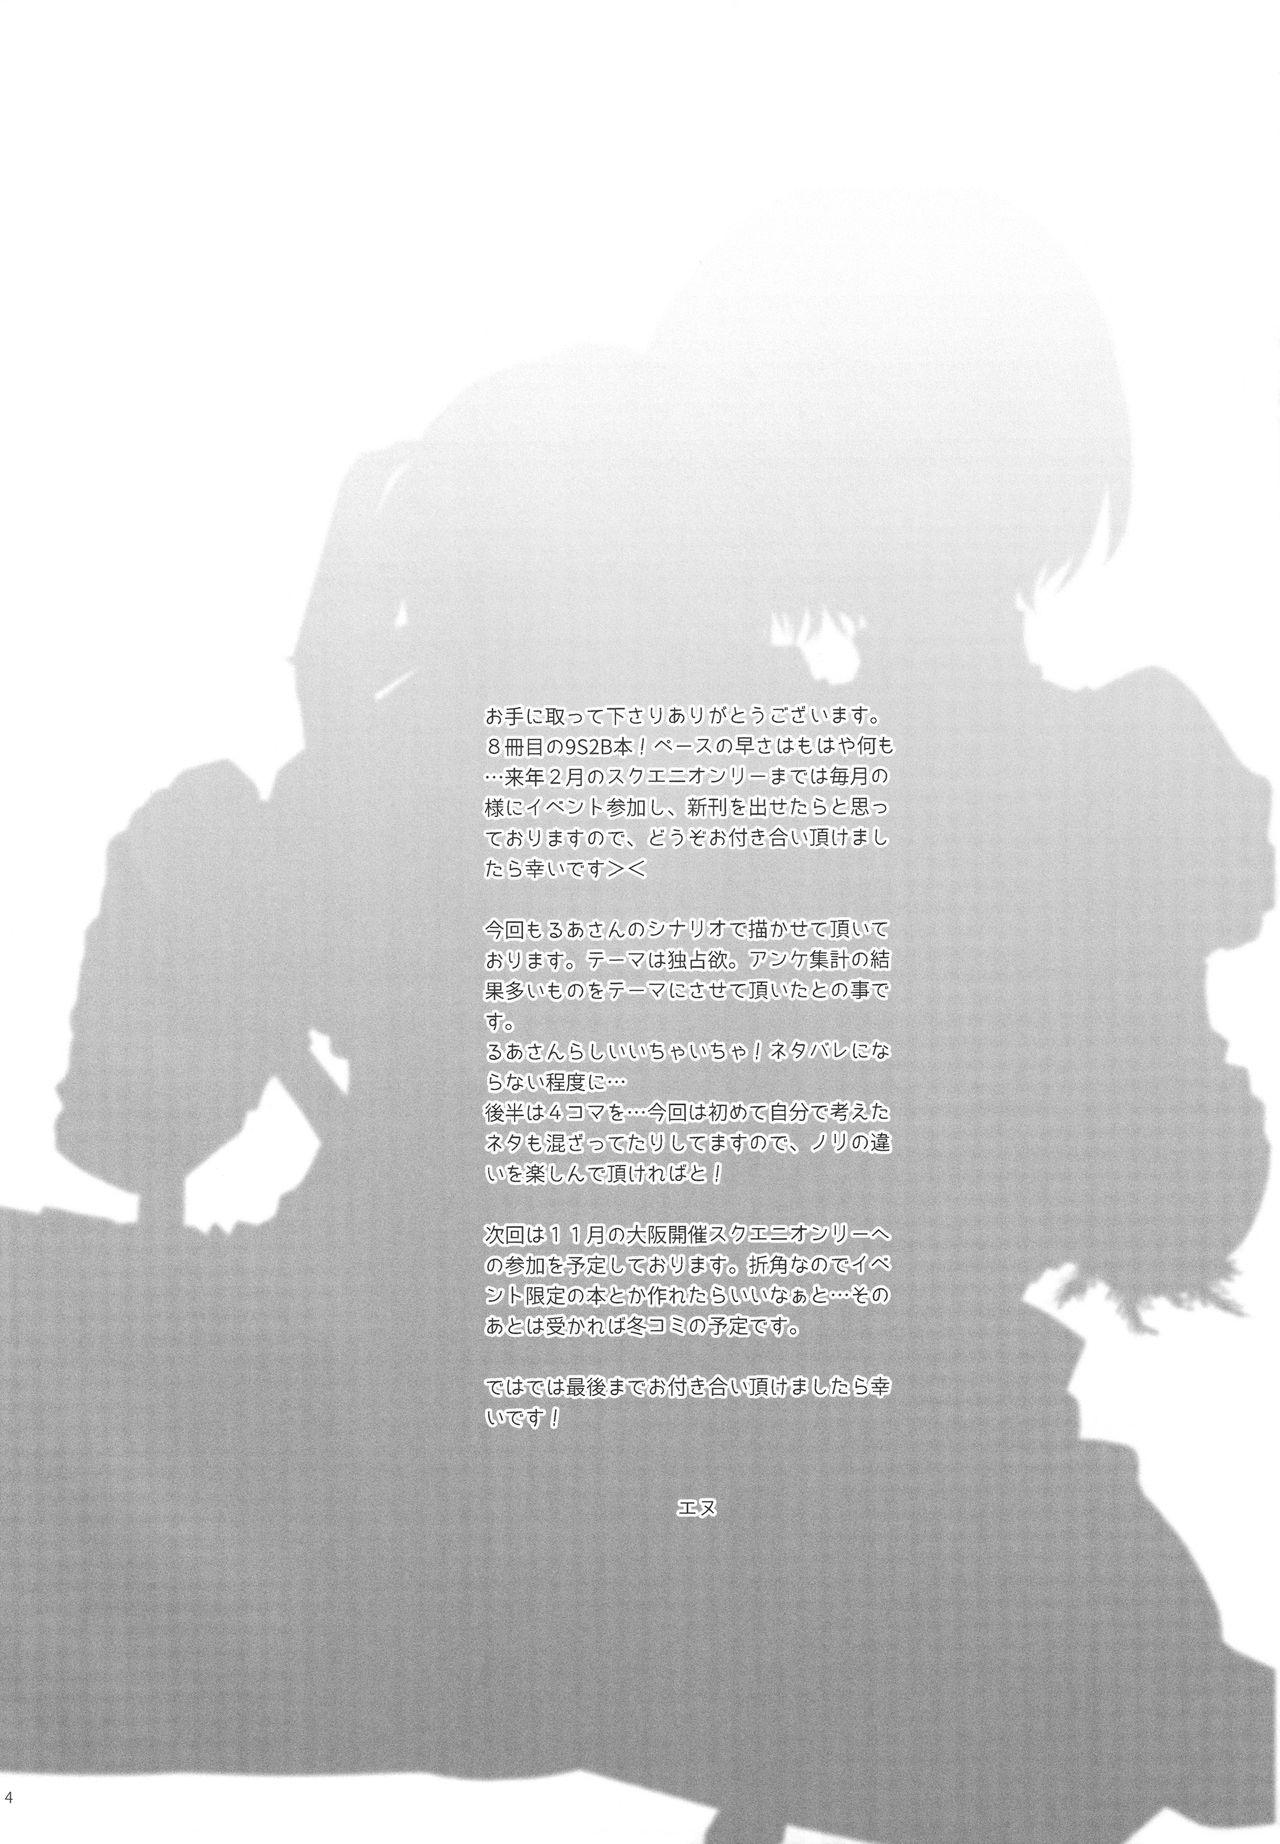 Livecam Yuki ni Chiru Aka - Nier automata Love - Page 3